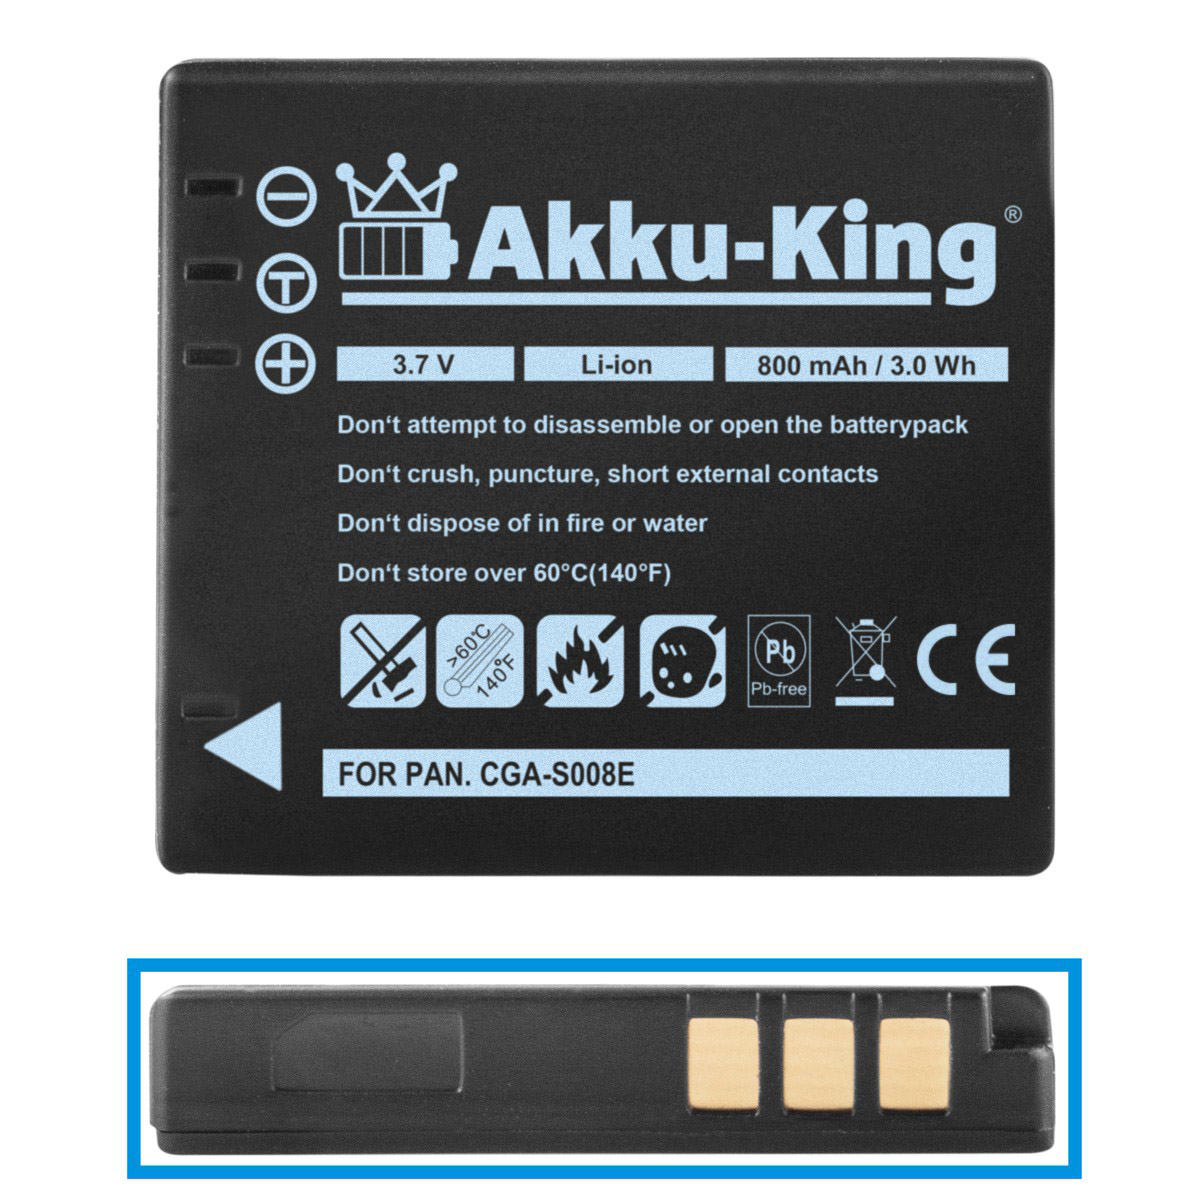 Li-Ion Akku mit 3.7 Panasonic CGA-S008E Kamera-Akku, kompatibel 800mAh AKKU-KING Volt,